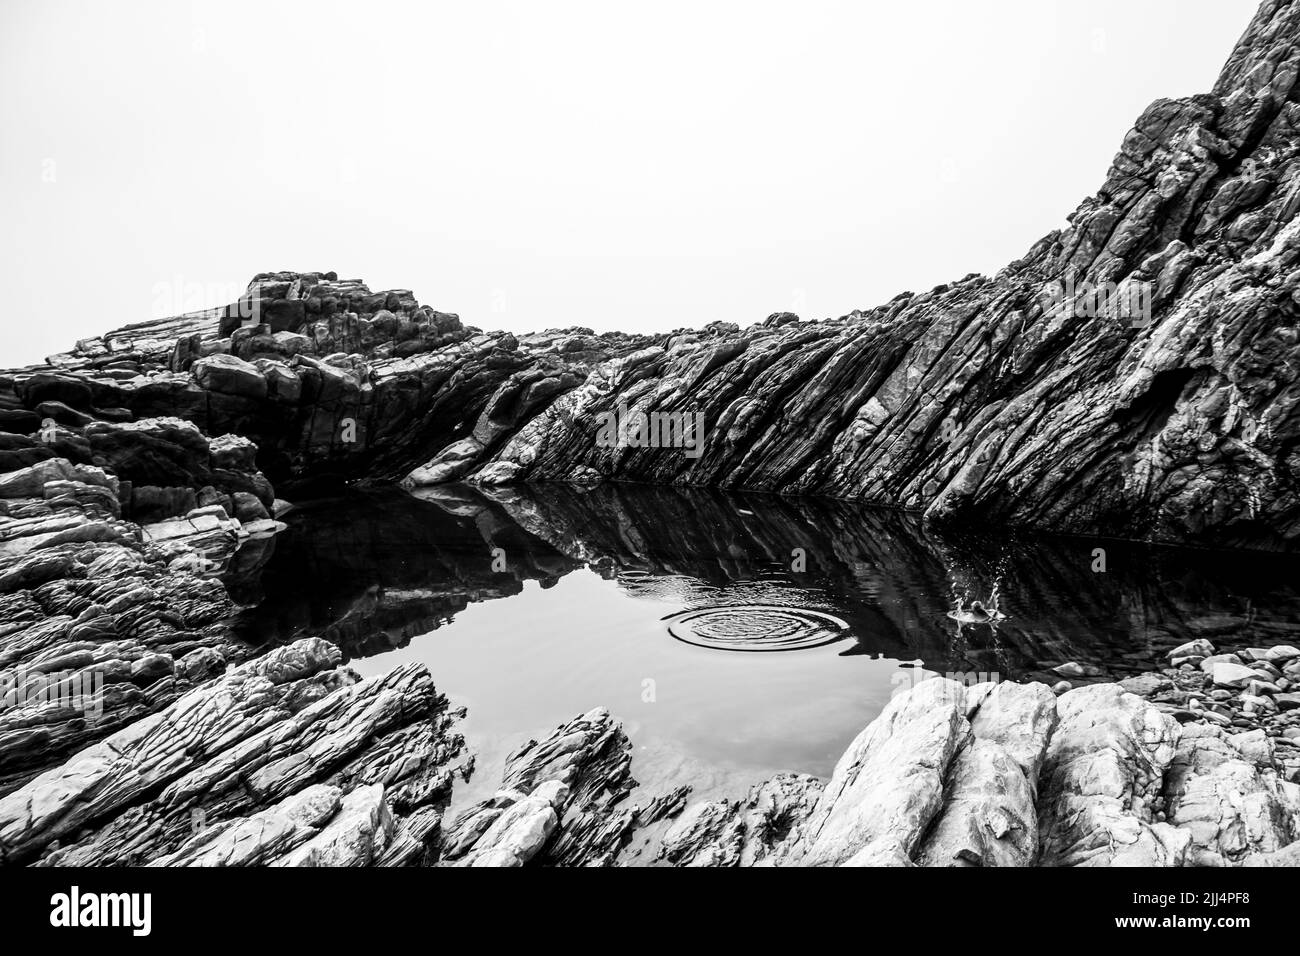 Saltando rocas en una piscina protegida y tranquila entre las rocas inclinadas y escarpadas de la costa de Tsitsikamma, Sudáfrica, en blanco y negro Foto de stock